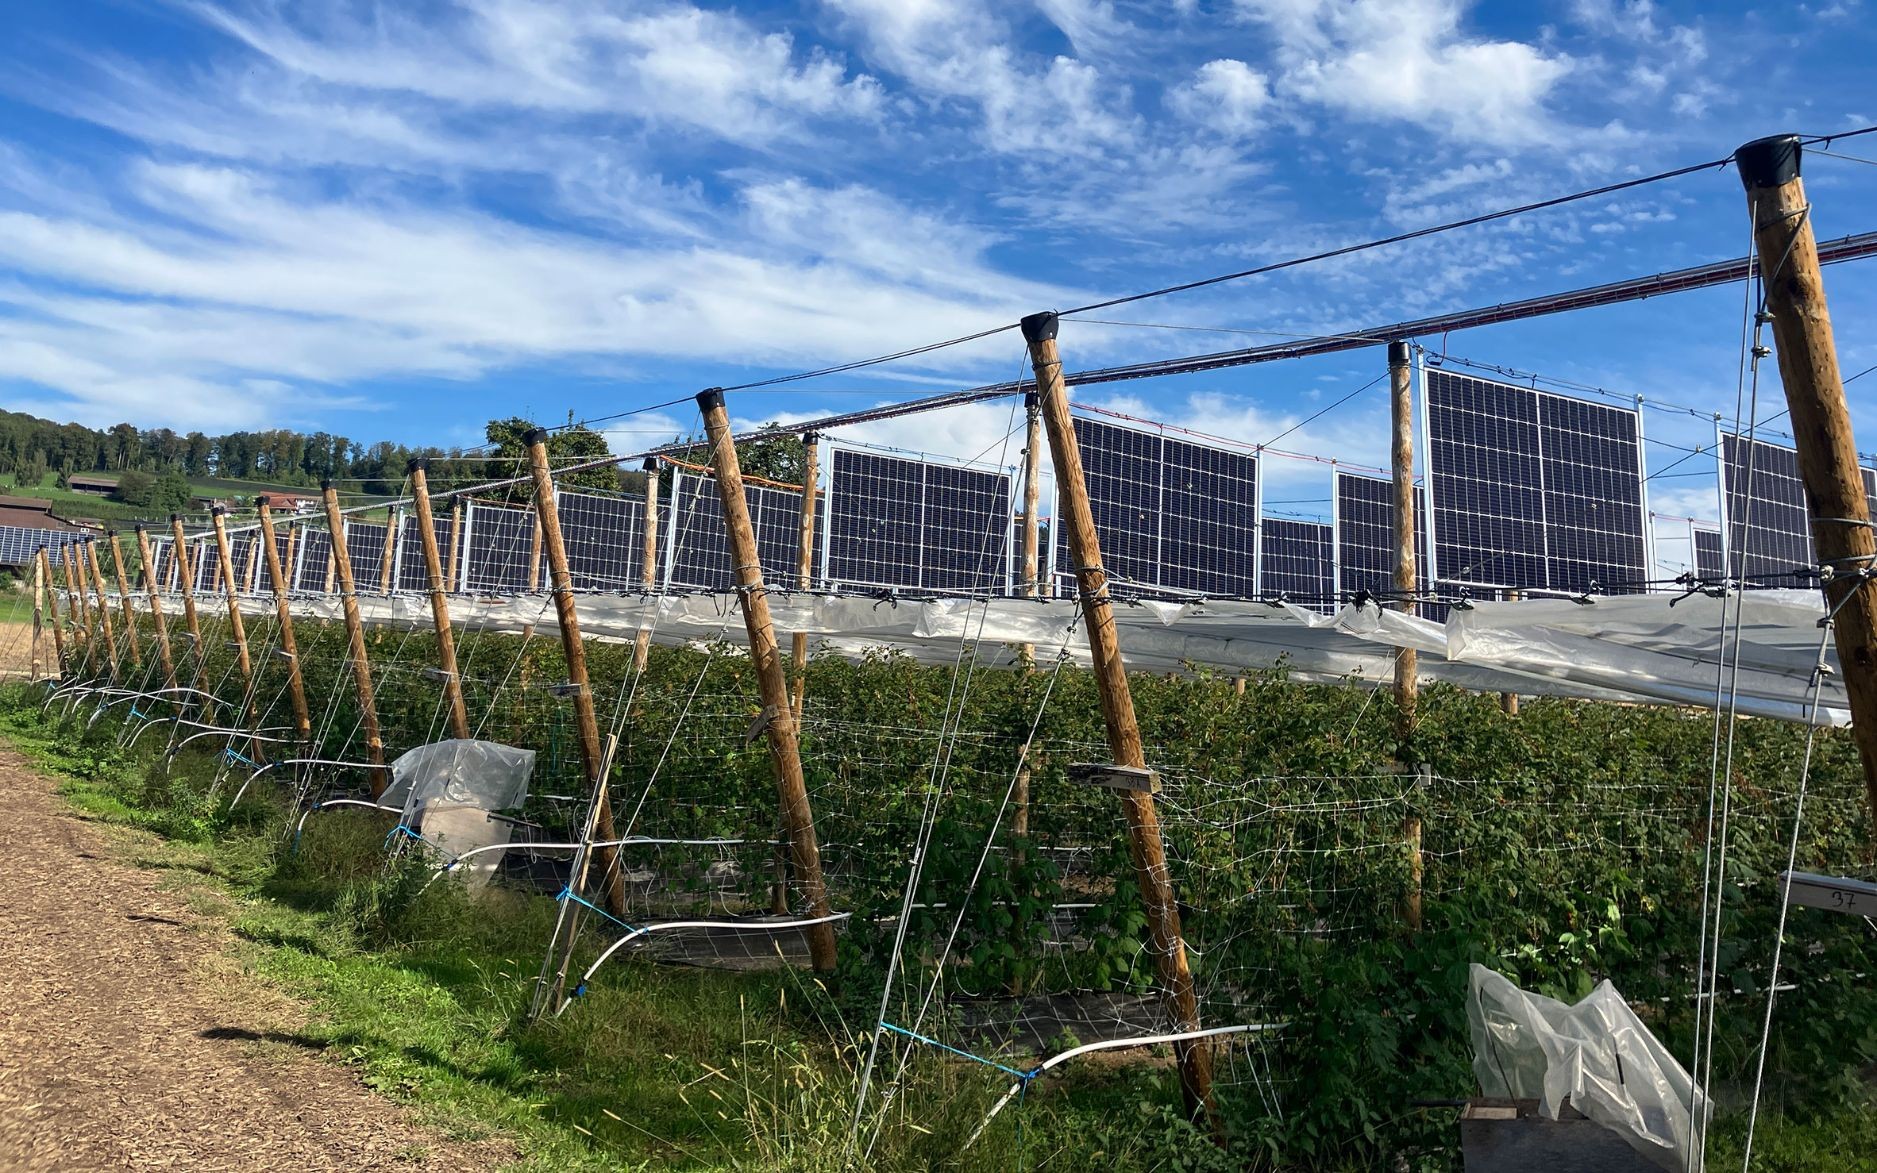 Des fruits et de l’énergie solaire dans les champs, le nouveau concept écologique testé en Suisse.